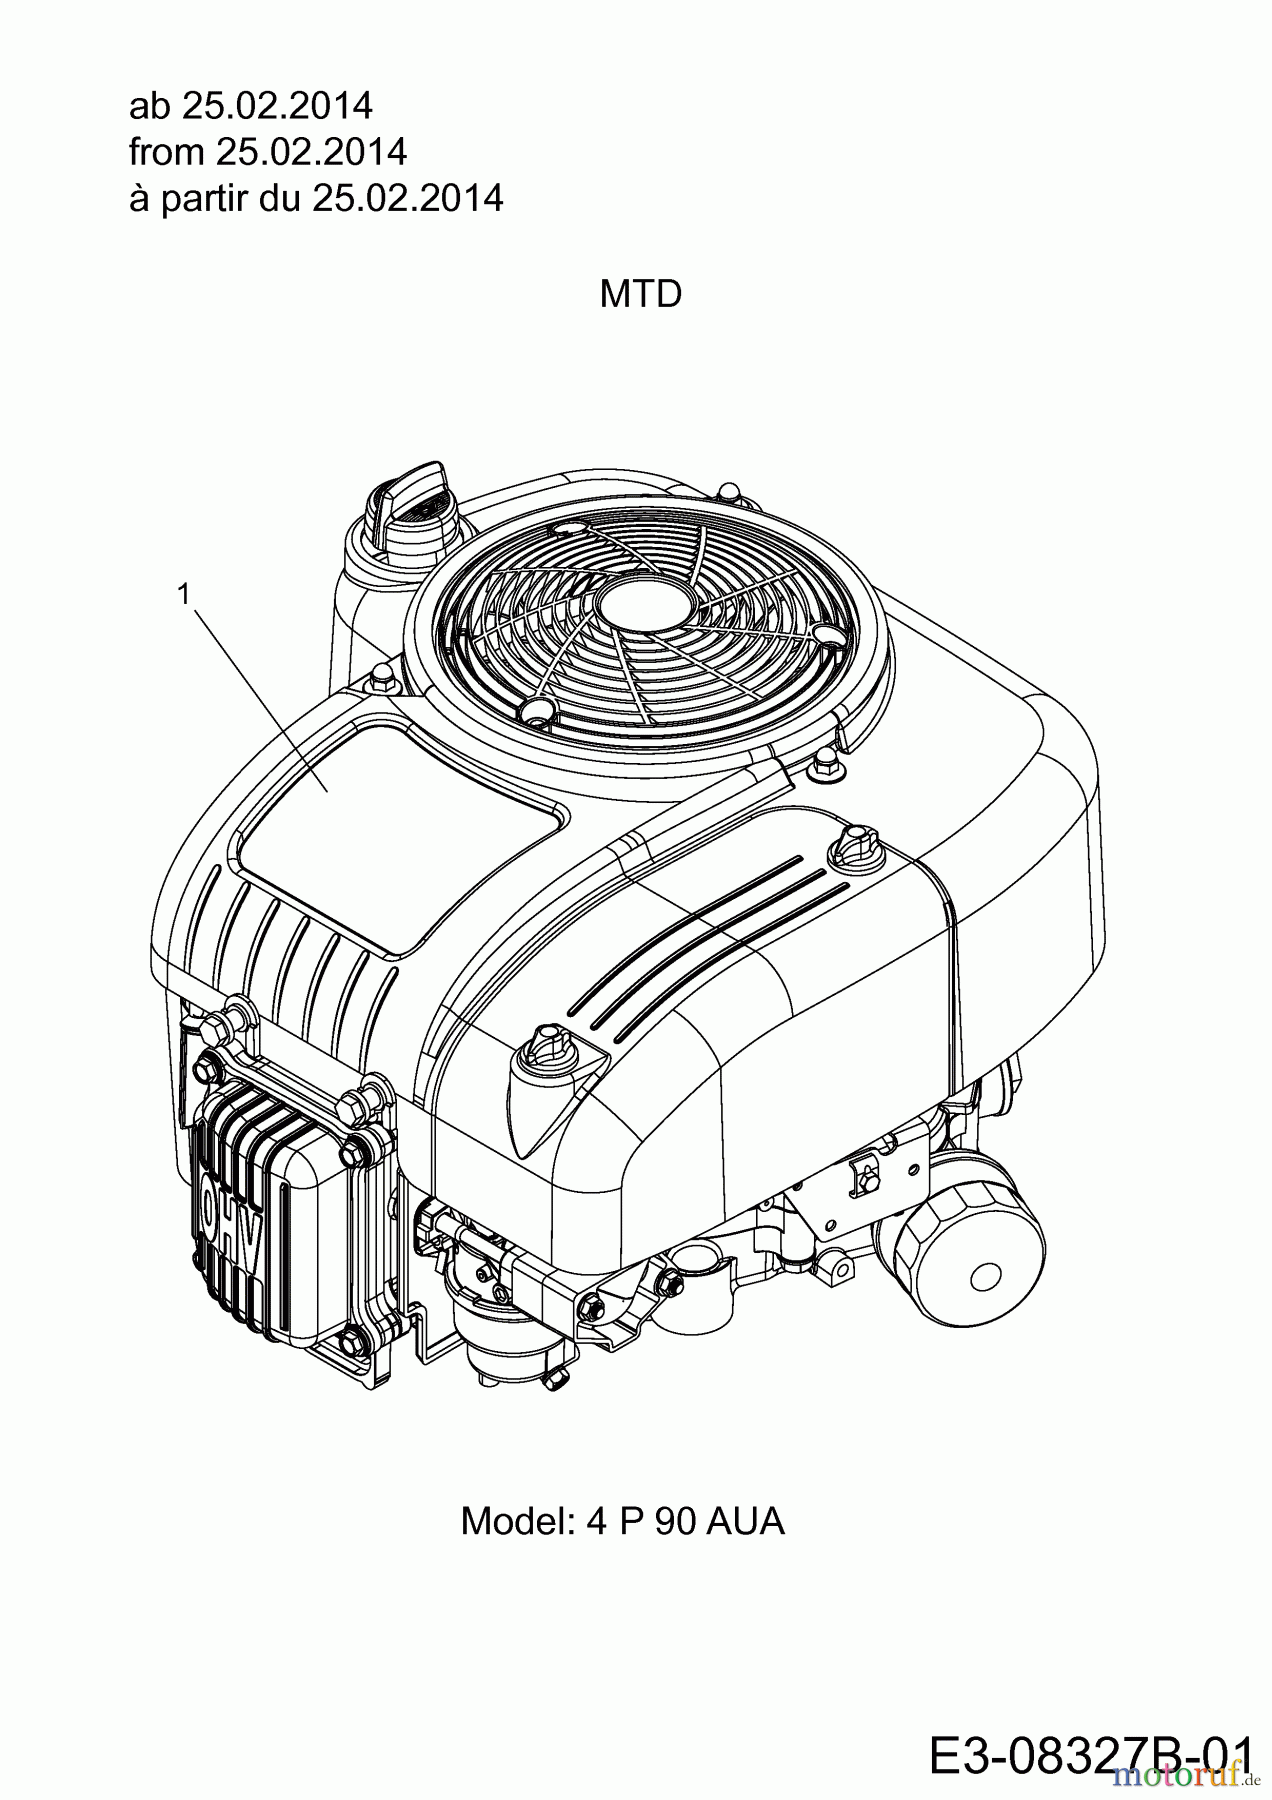  MTD Rasentraktoren DL 92 H 13H2715E676  (2014) Motor MTD ab 25.02.2014